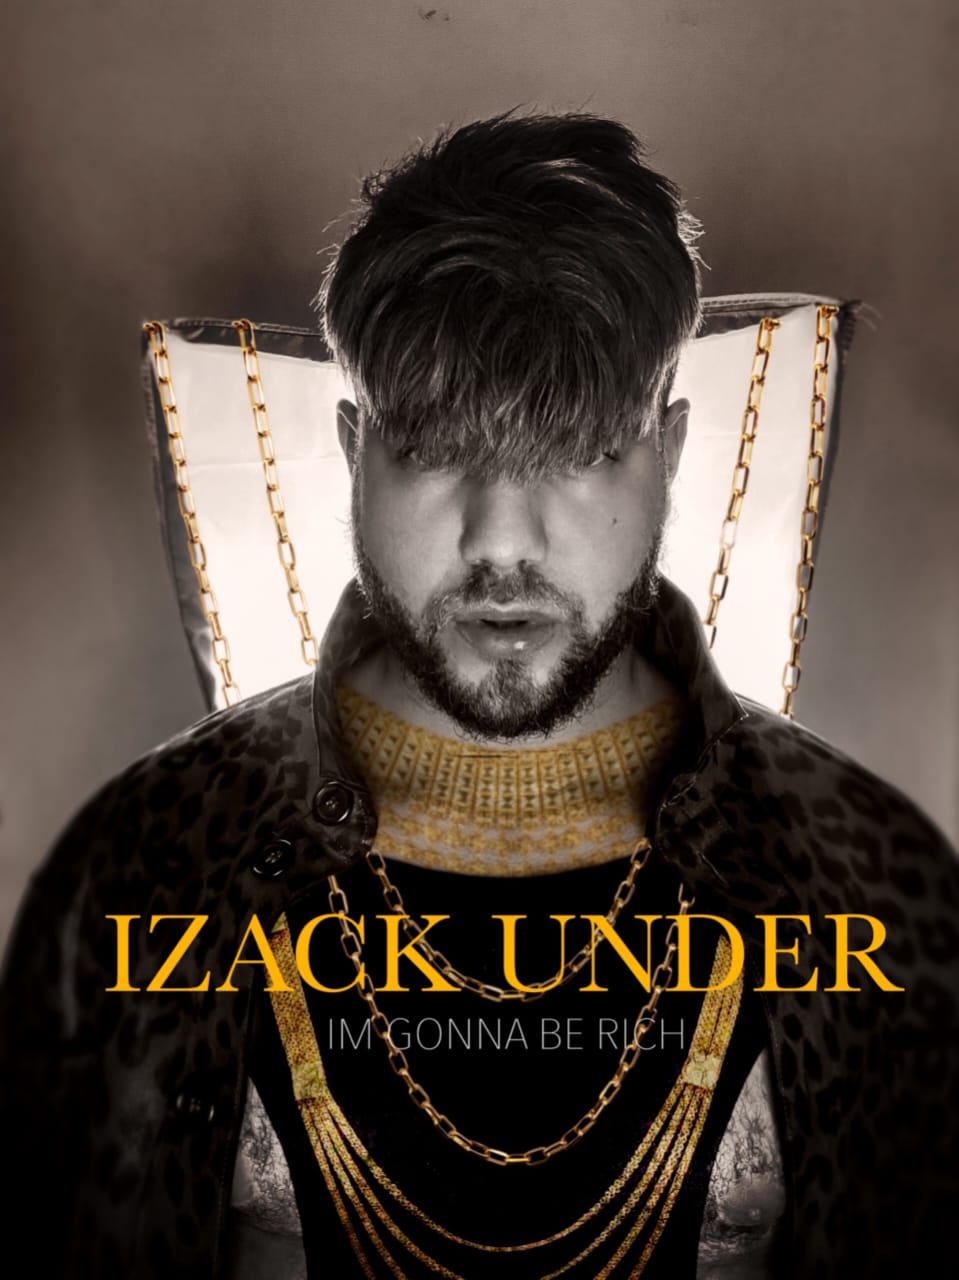 Izack Under’s Debut Single “I’m Gonna Be Rich”